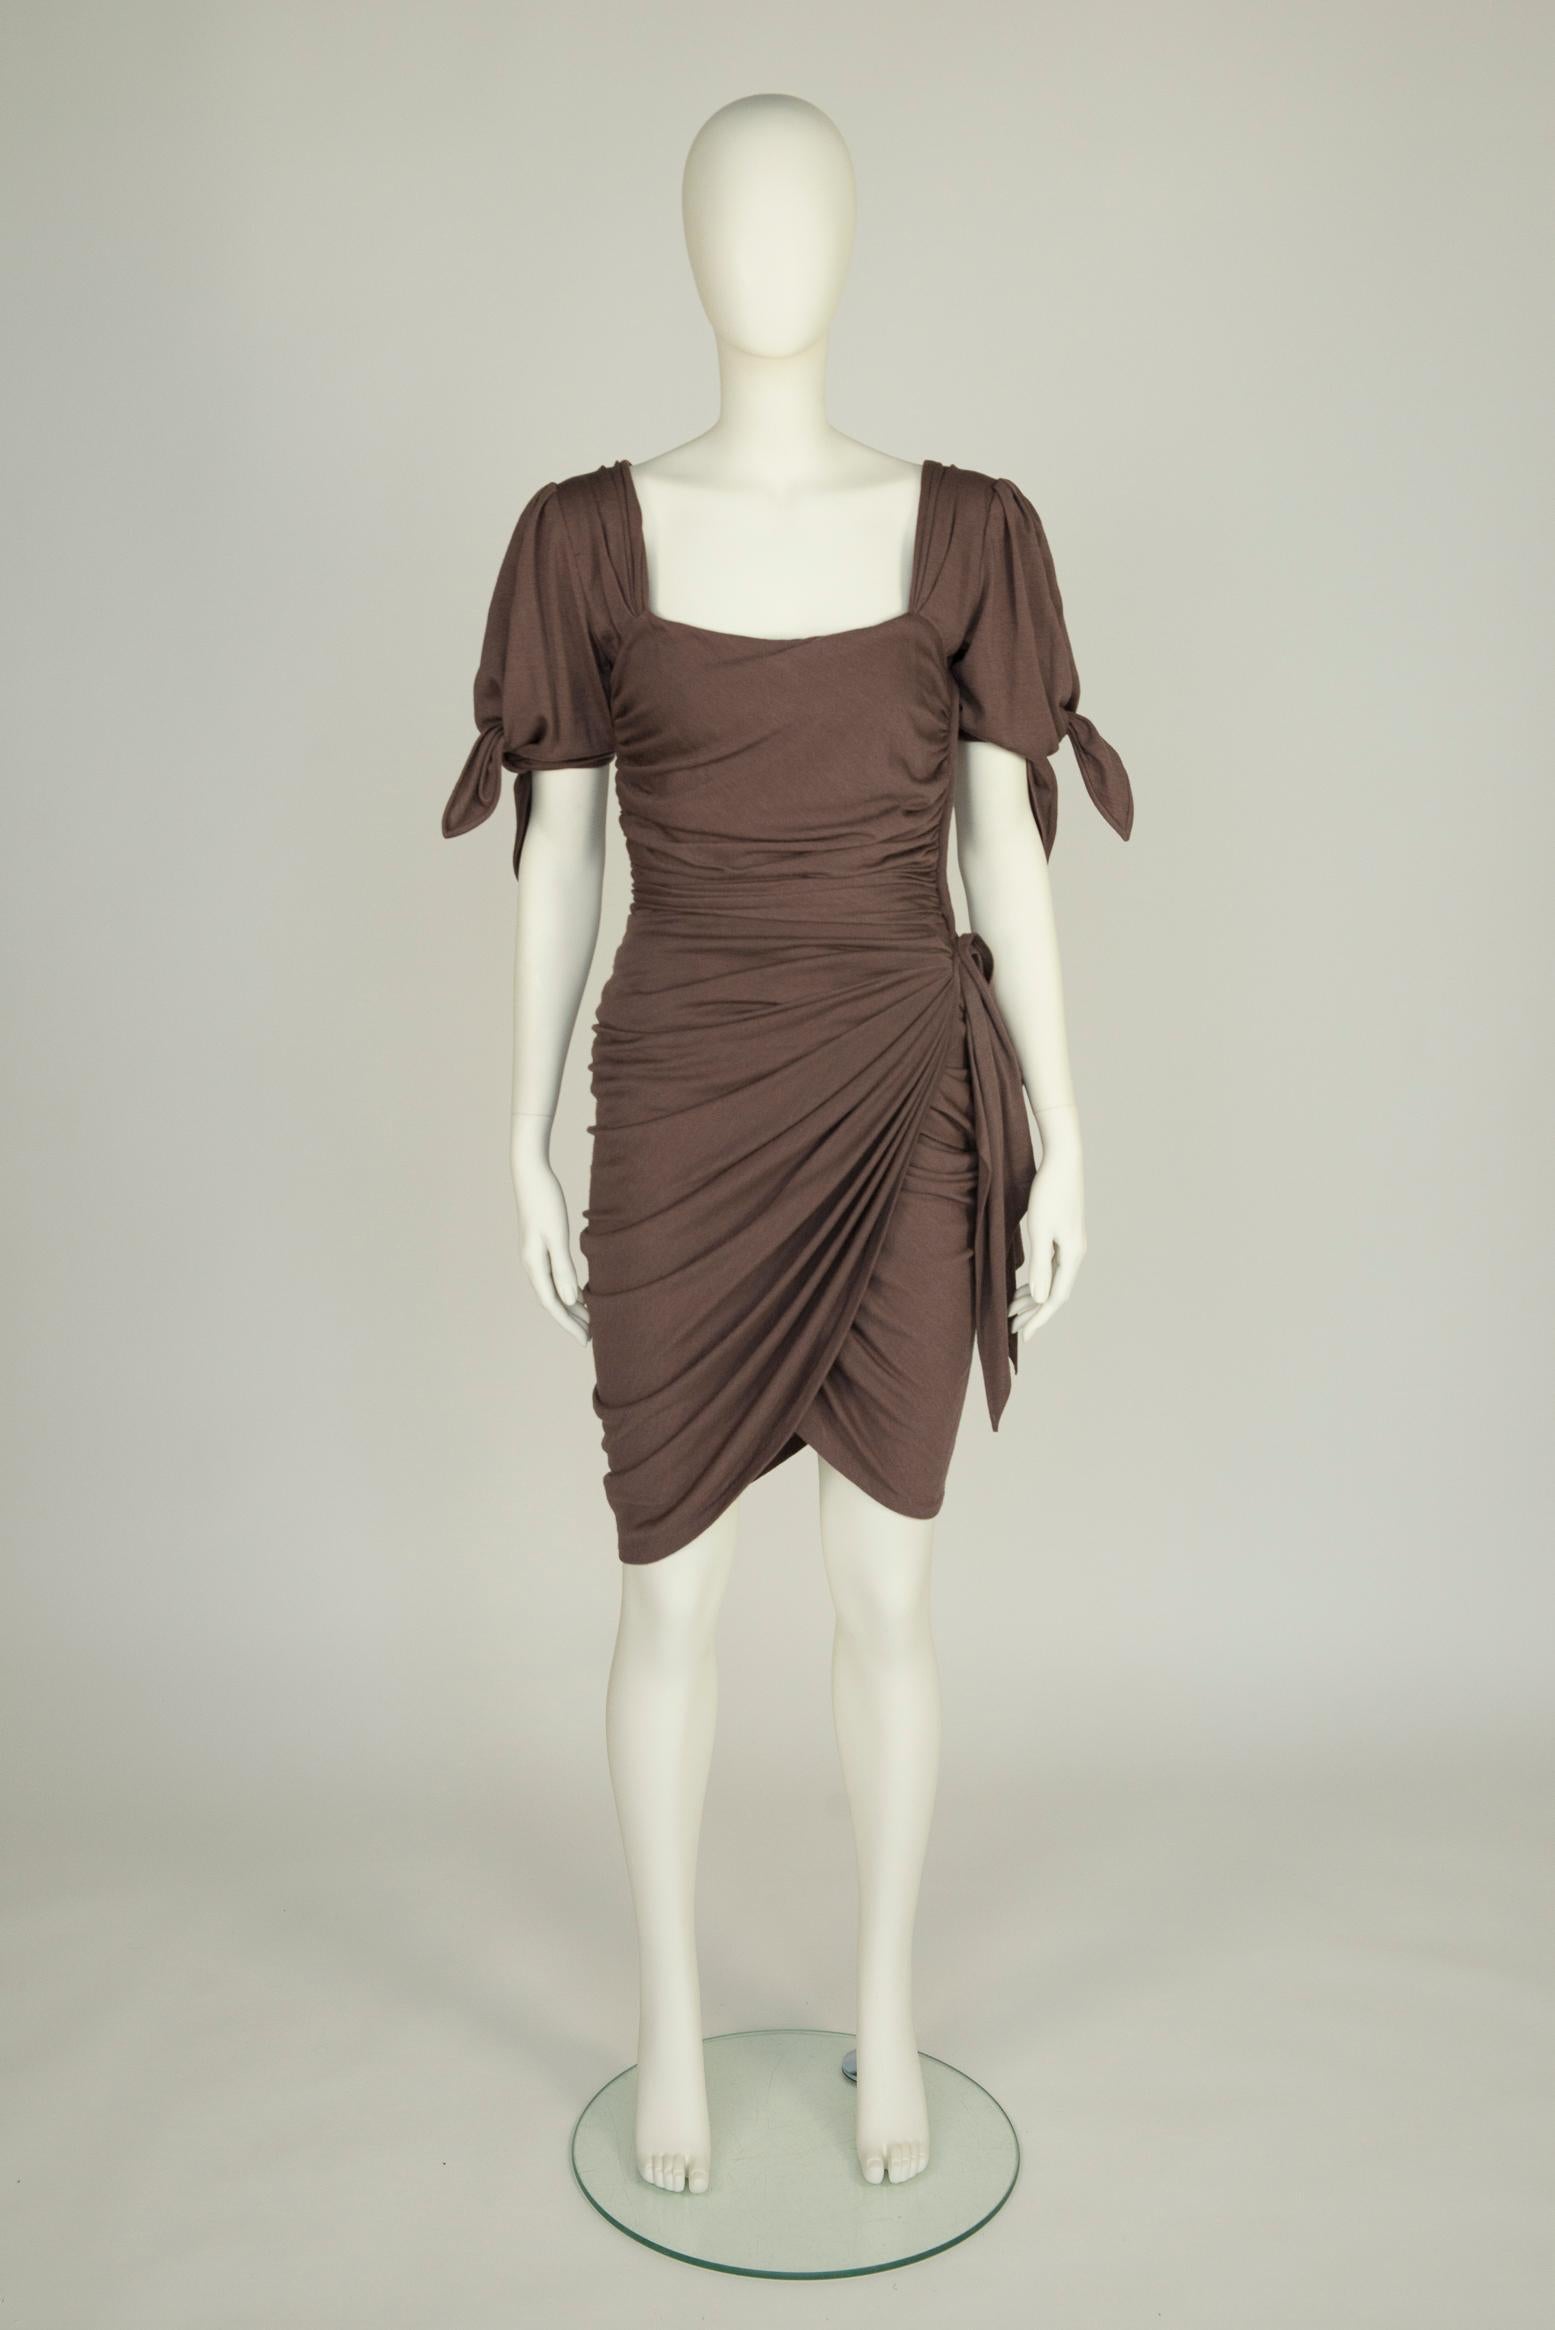 Dieses Cocktailkleid von Ungaro Parallèle aus den 80er Jahren wurde vor mehr als dreißig Jahren entworfen und ist immer noch total angesagt! Es ist aus taupefarbener, weicher Wolle gefertigt, kunstvoll drapiert und geknotet, um eine körperbetonte